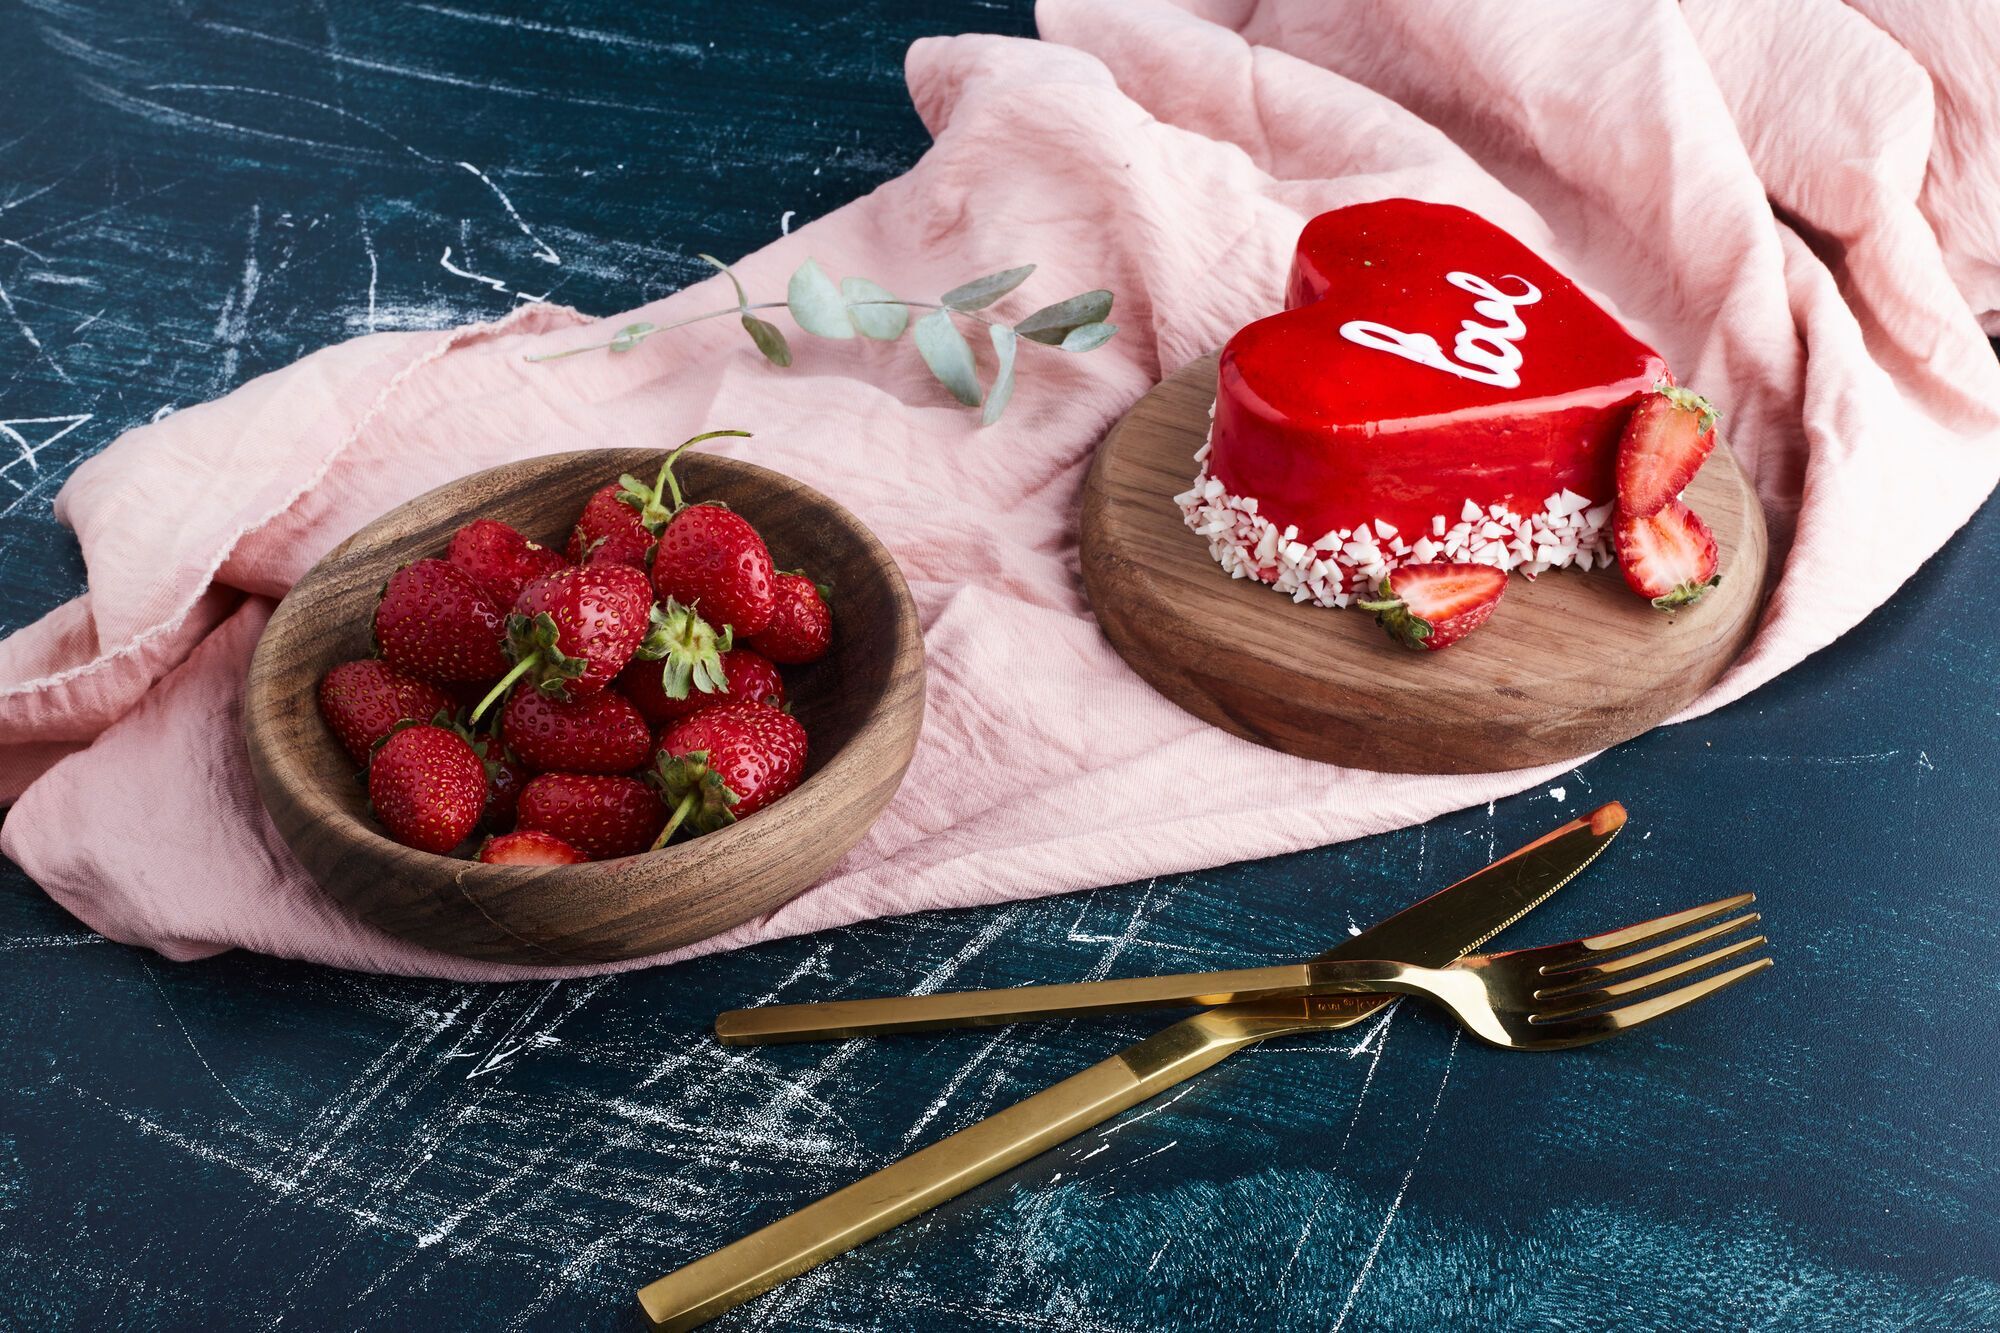 Strawberry cake: making a gluten-free summer dessert